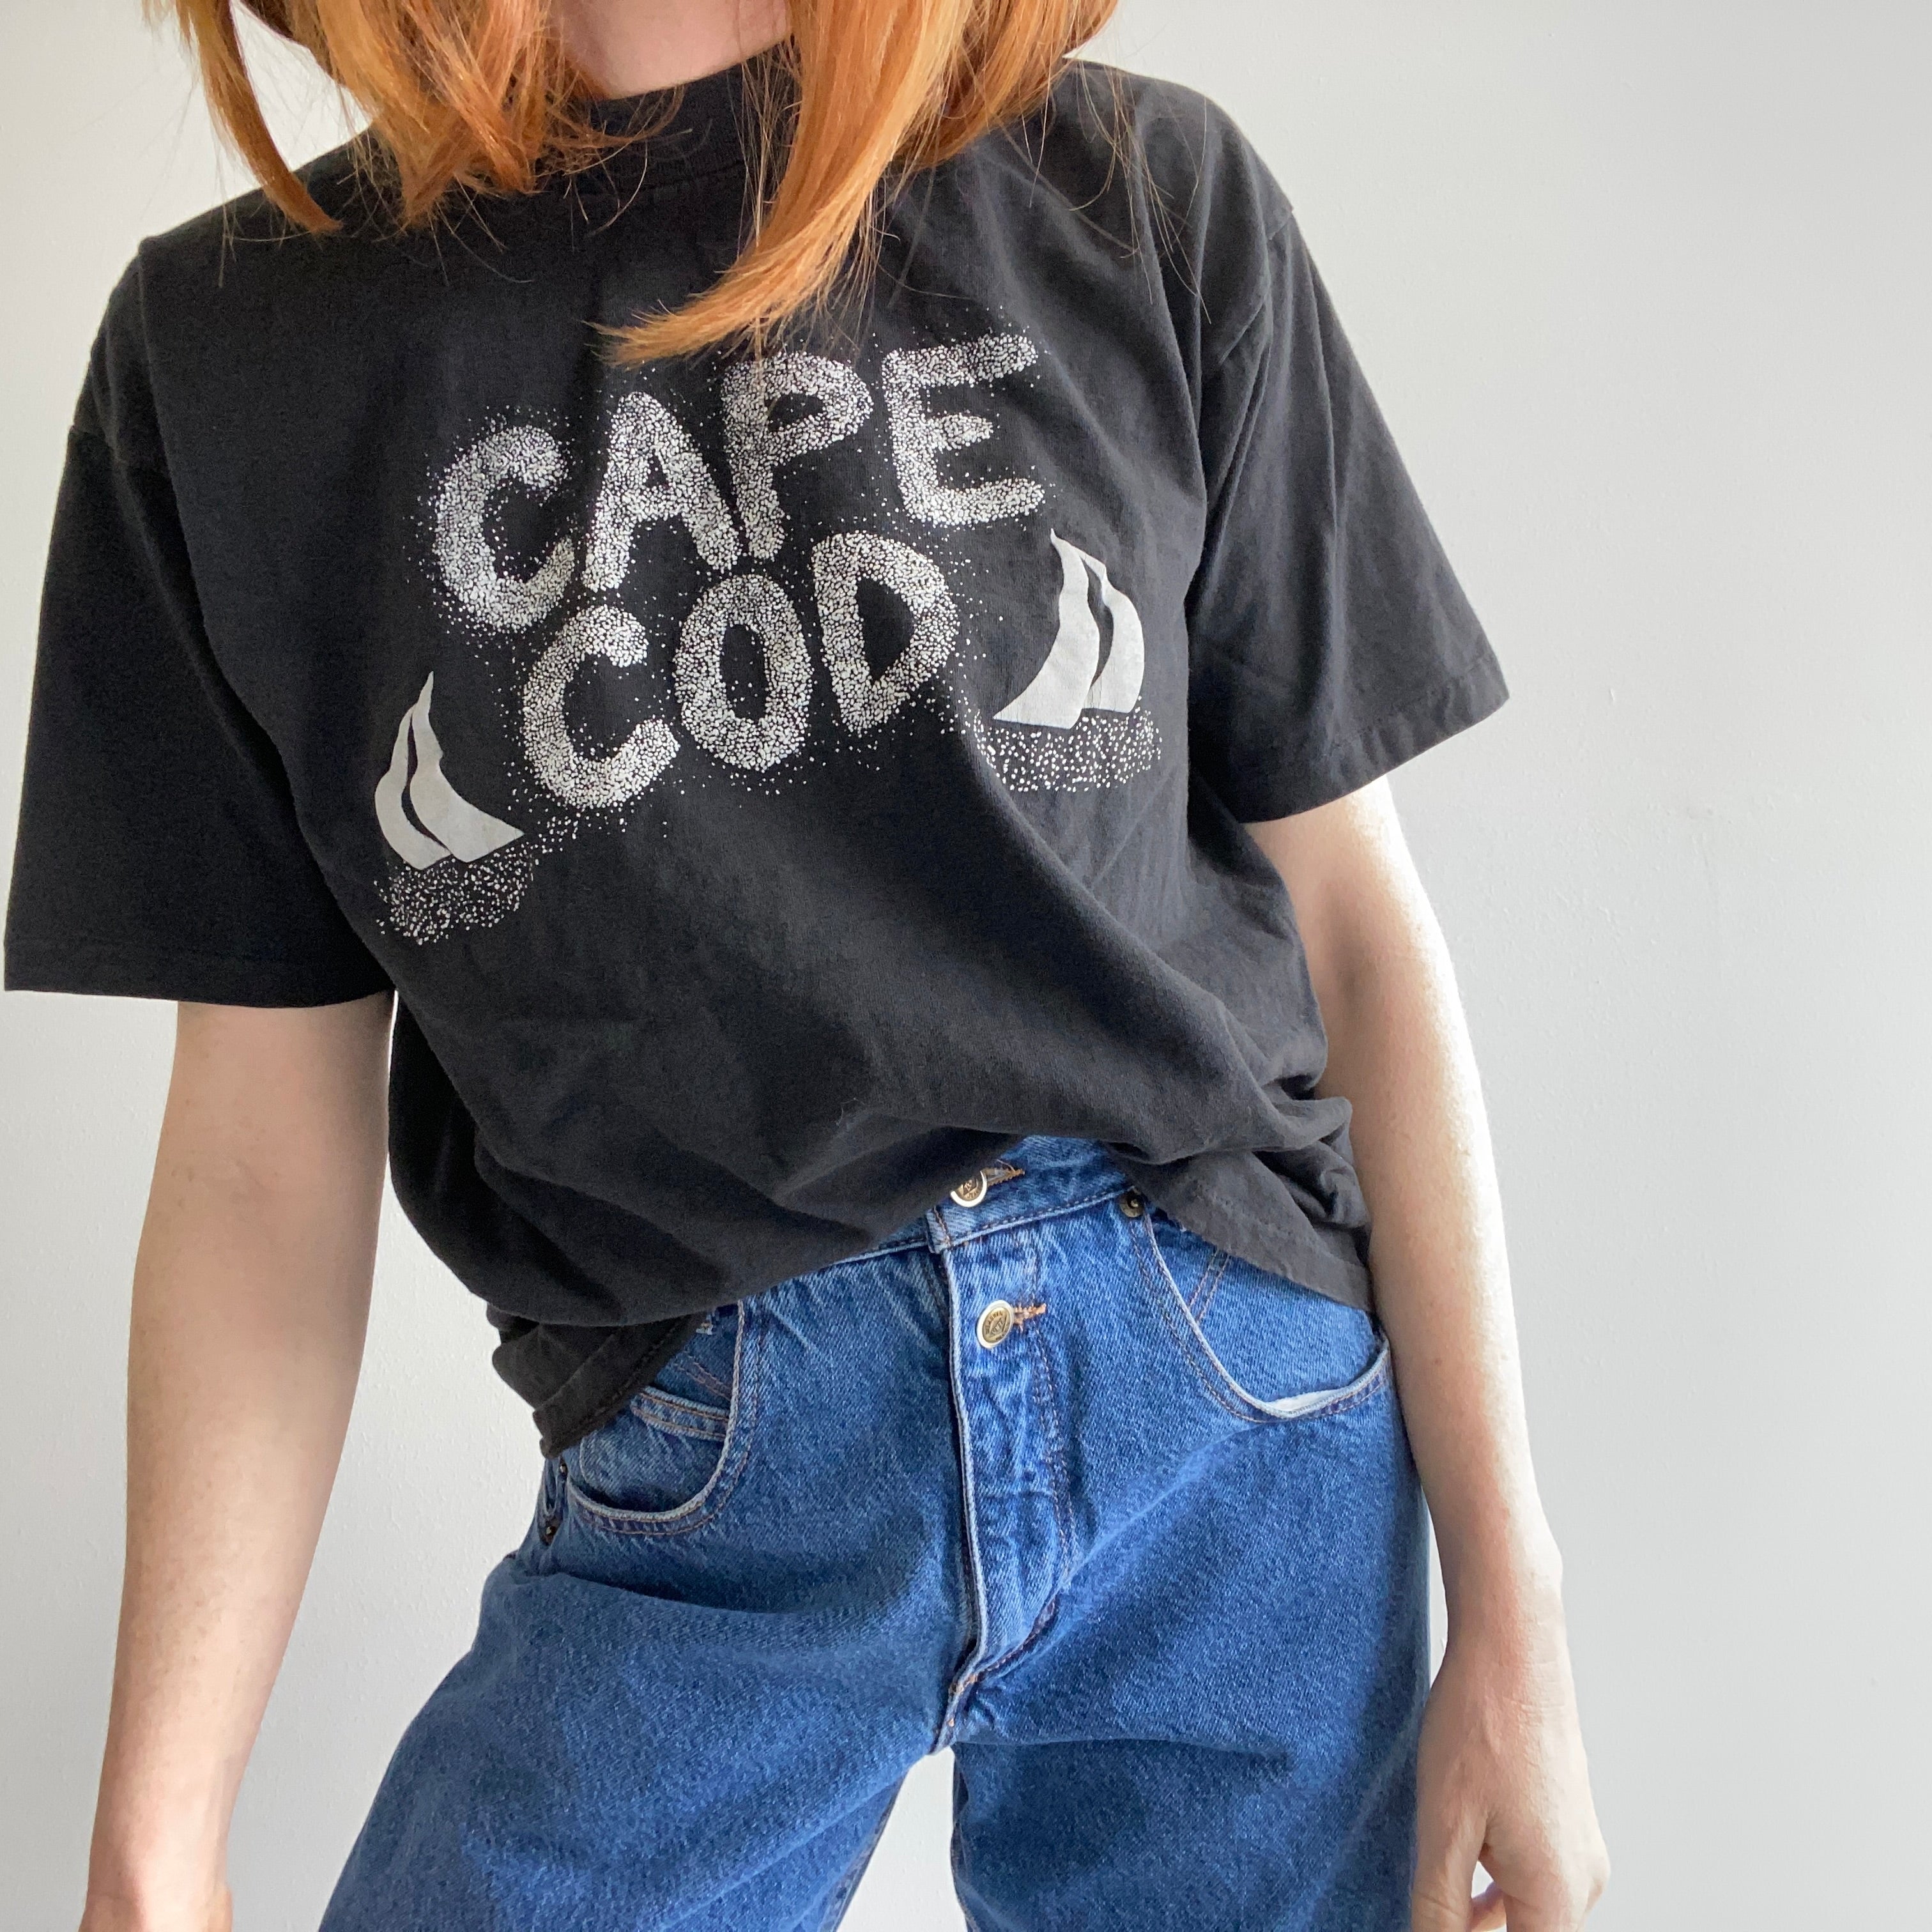 1980/90s Cape Cod Tourist T-Shirt